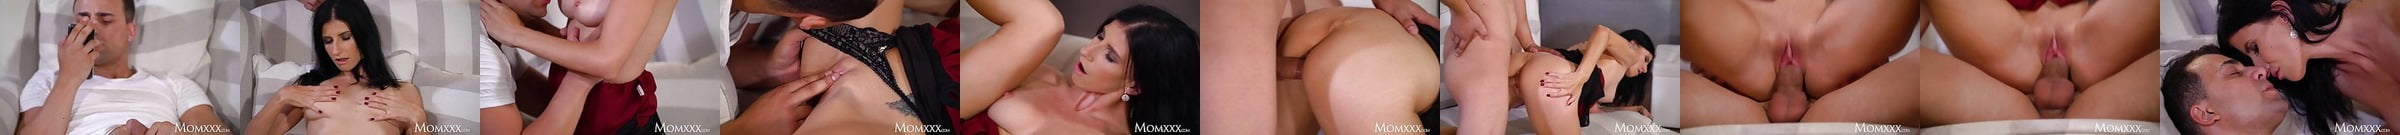 Momxxx Porn Videos 3 Xhamster